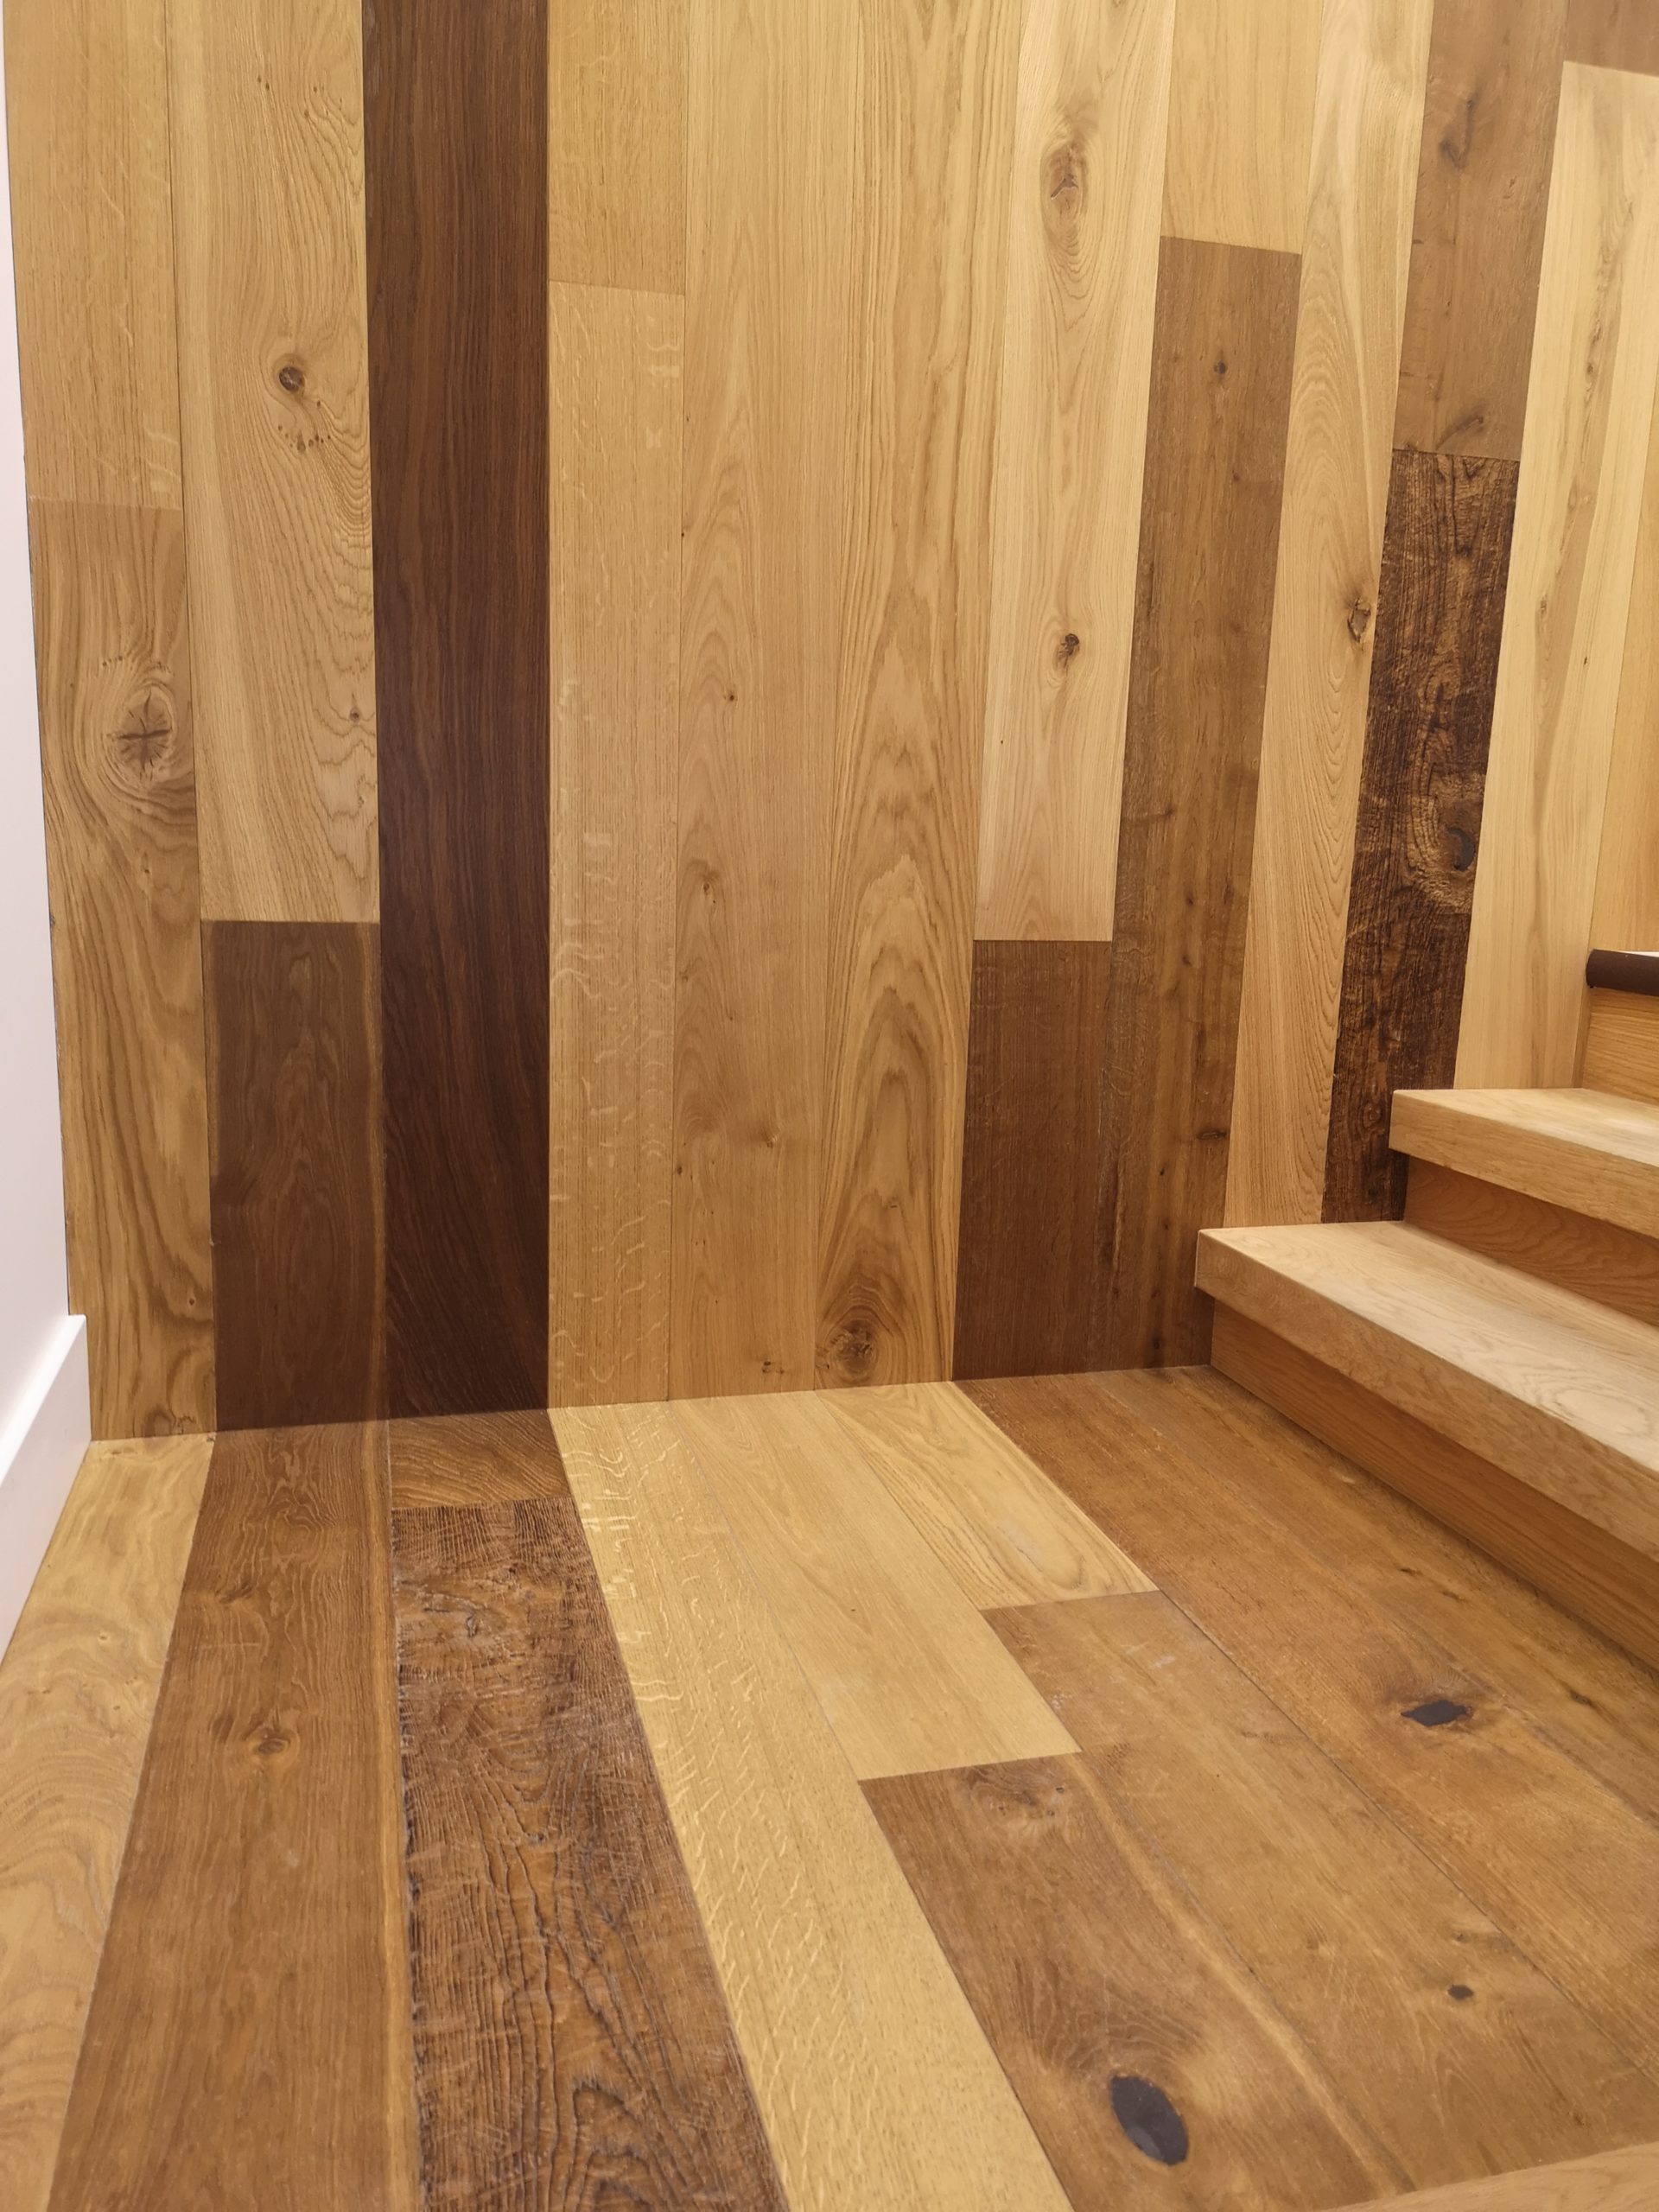 Oiled Hardwood Floors Touchwood Flooring Edmonton